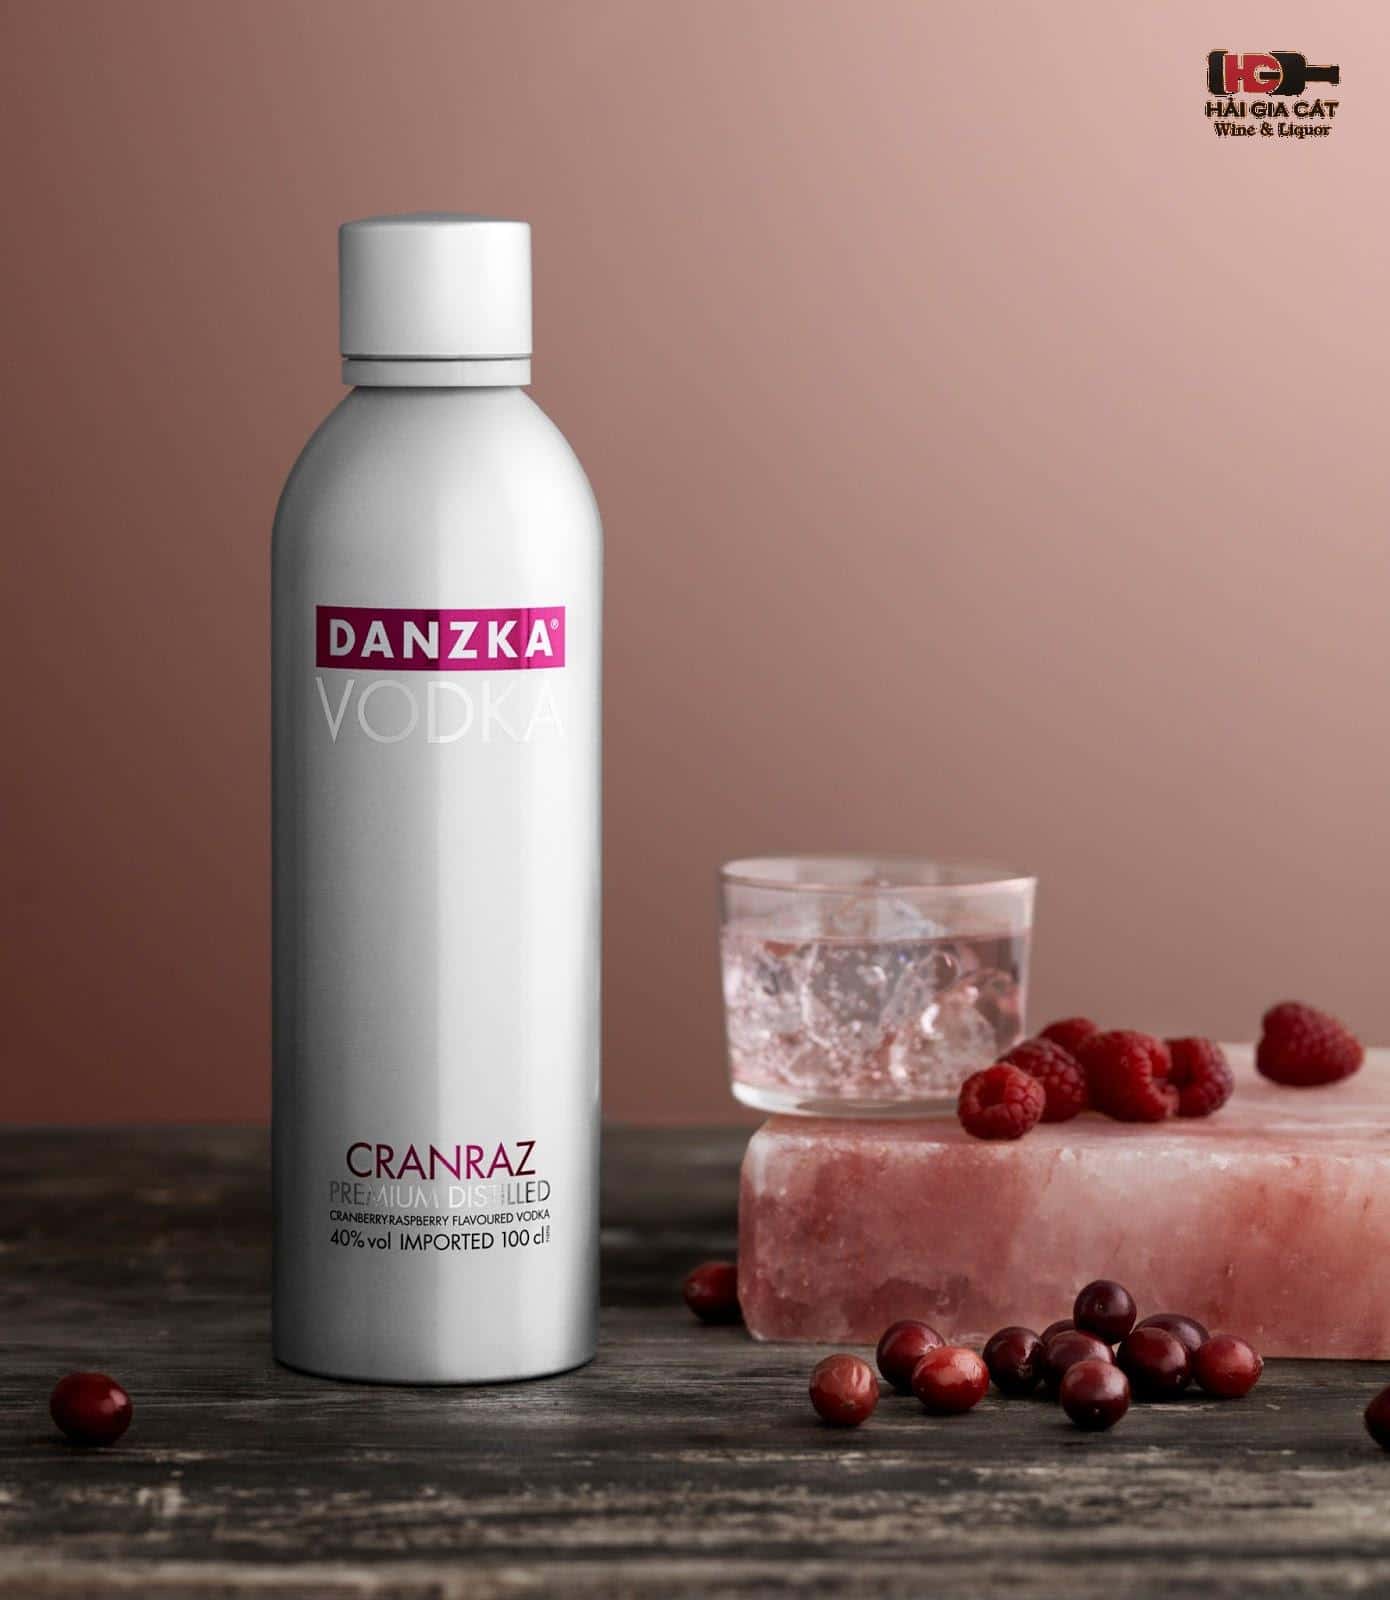 Rượu Vodka nhôm Danzka là gì?